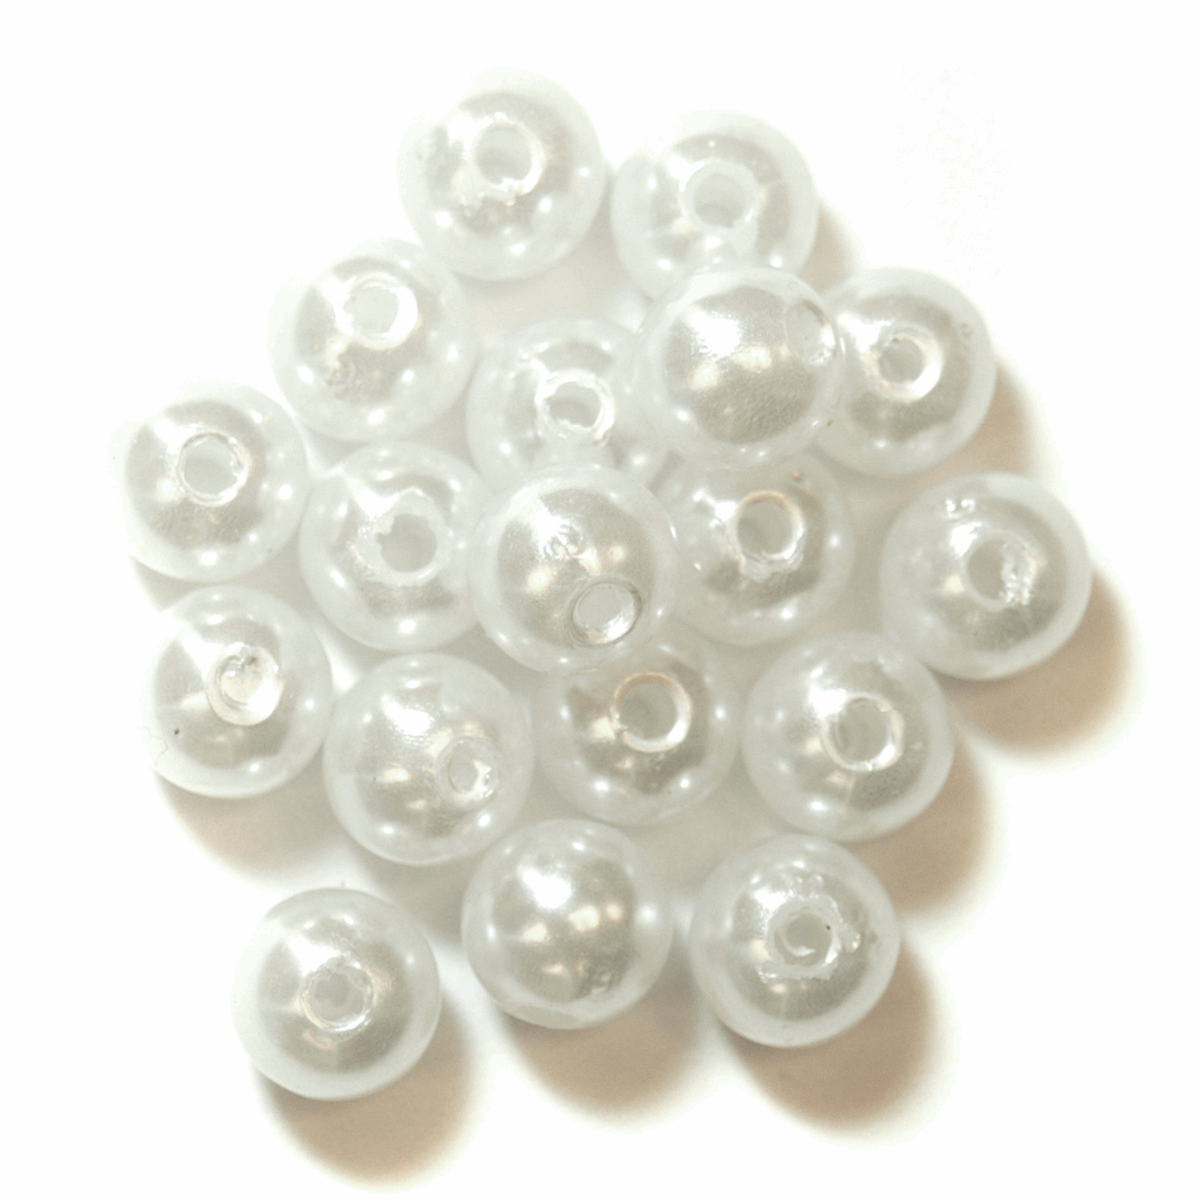 Trimits Pearls 8mm - 7g